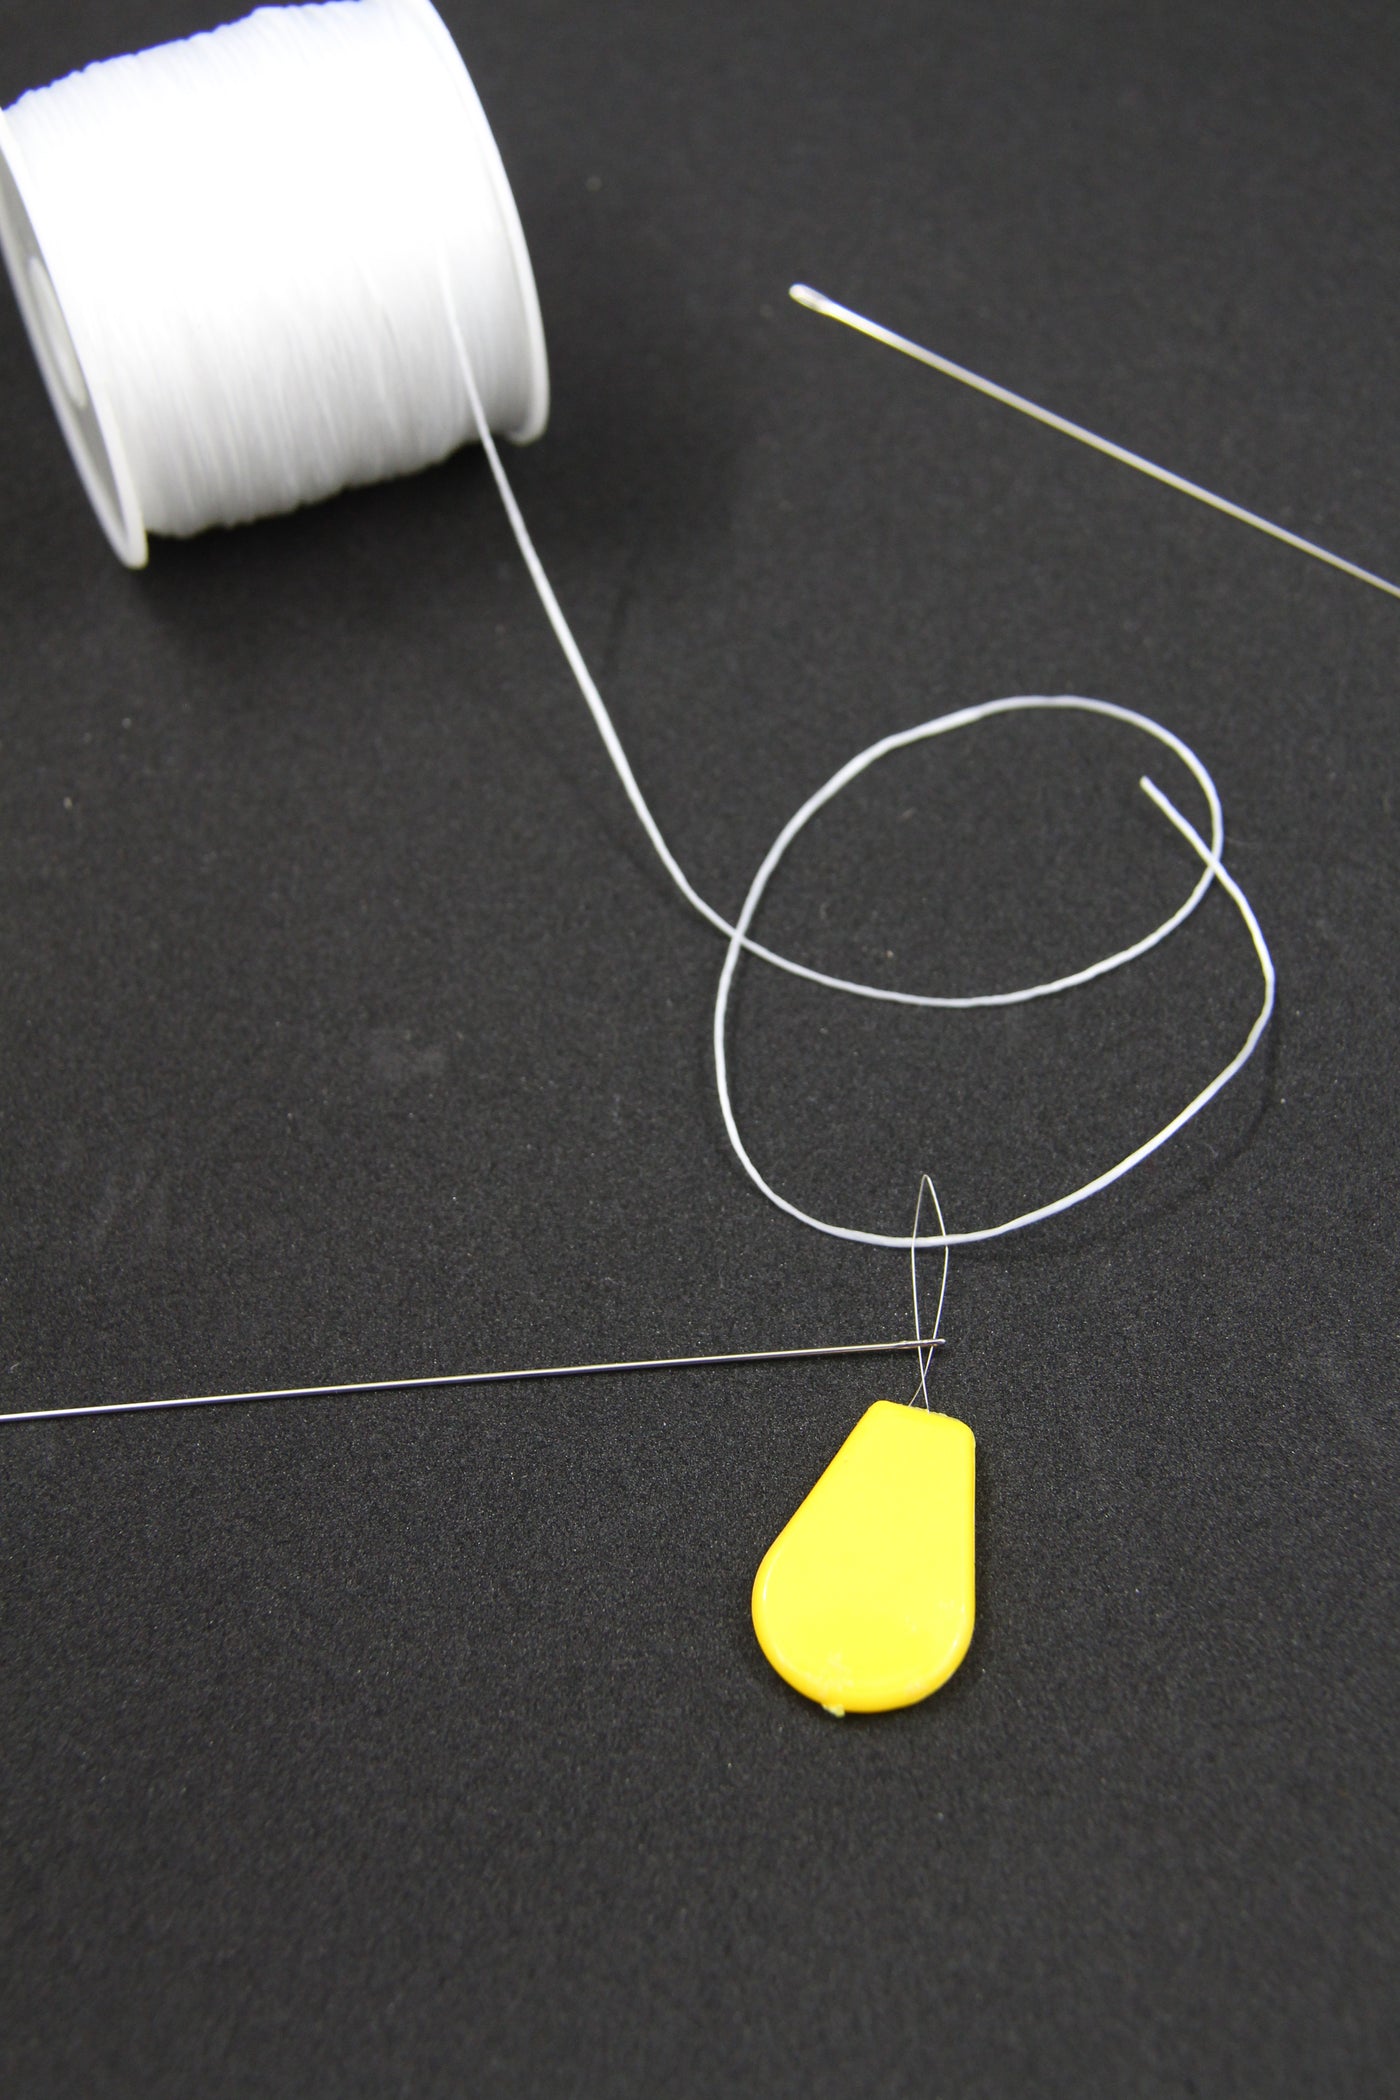 Elastic, Long Beading Needles, & Needle Threader for Enamel Tile Tila Beads